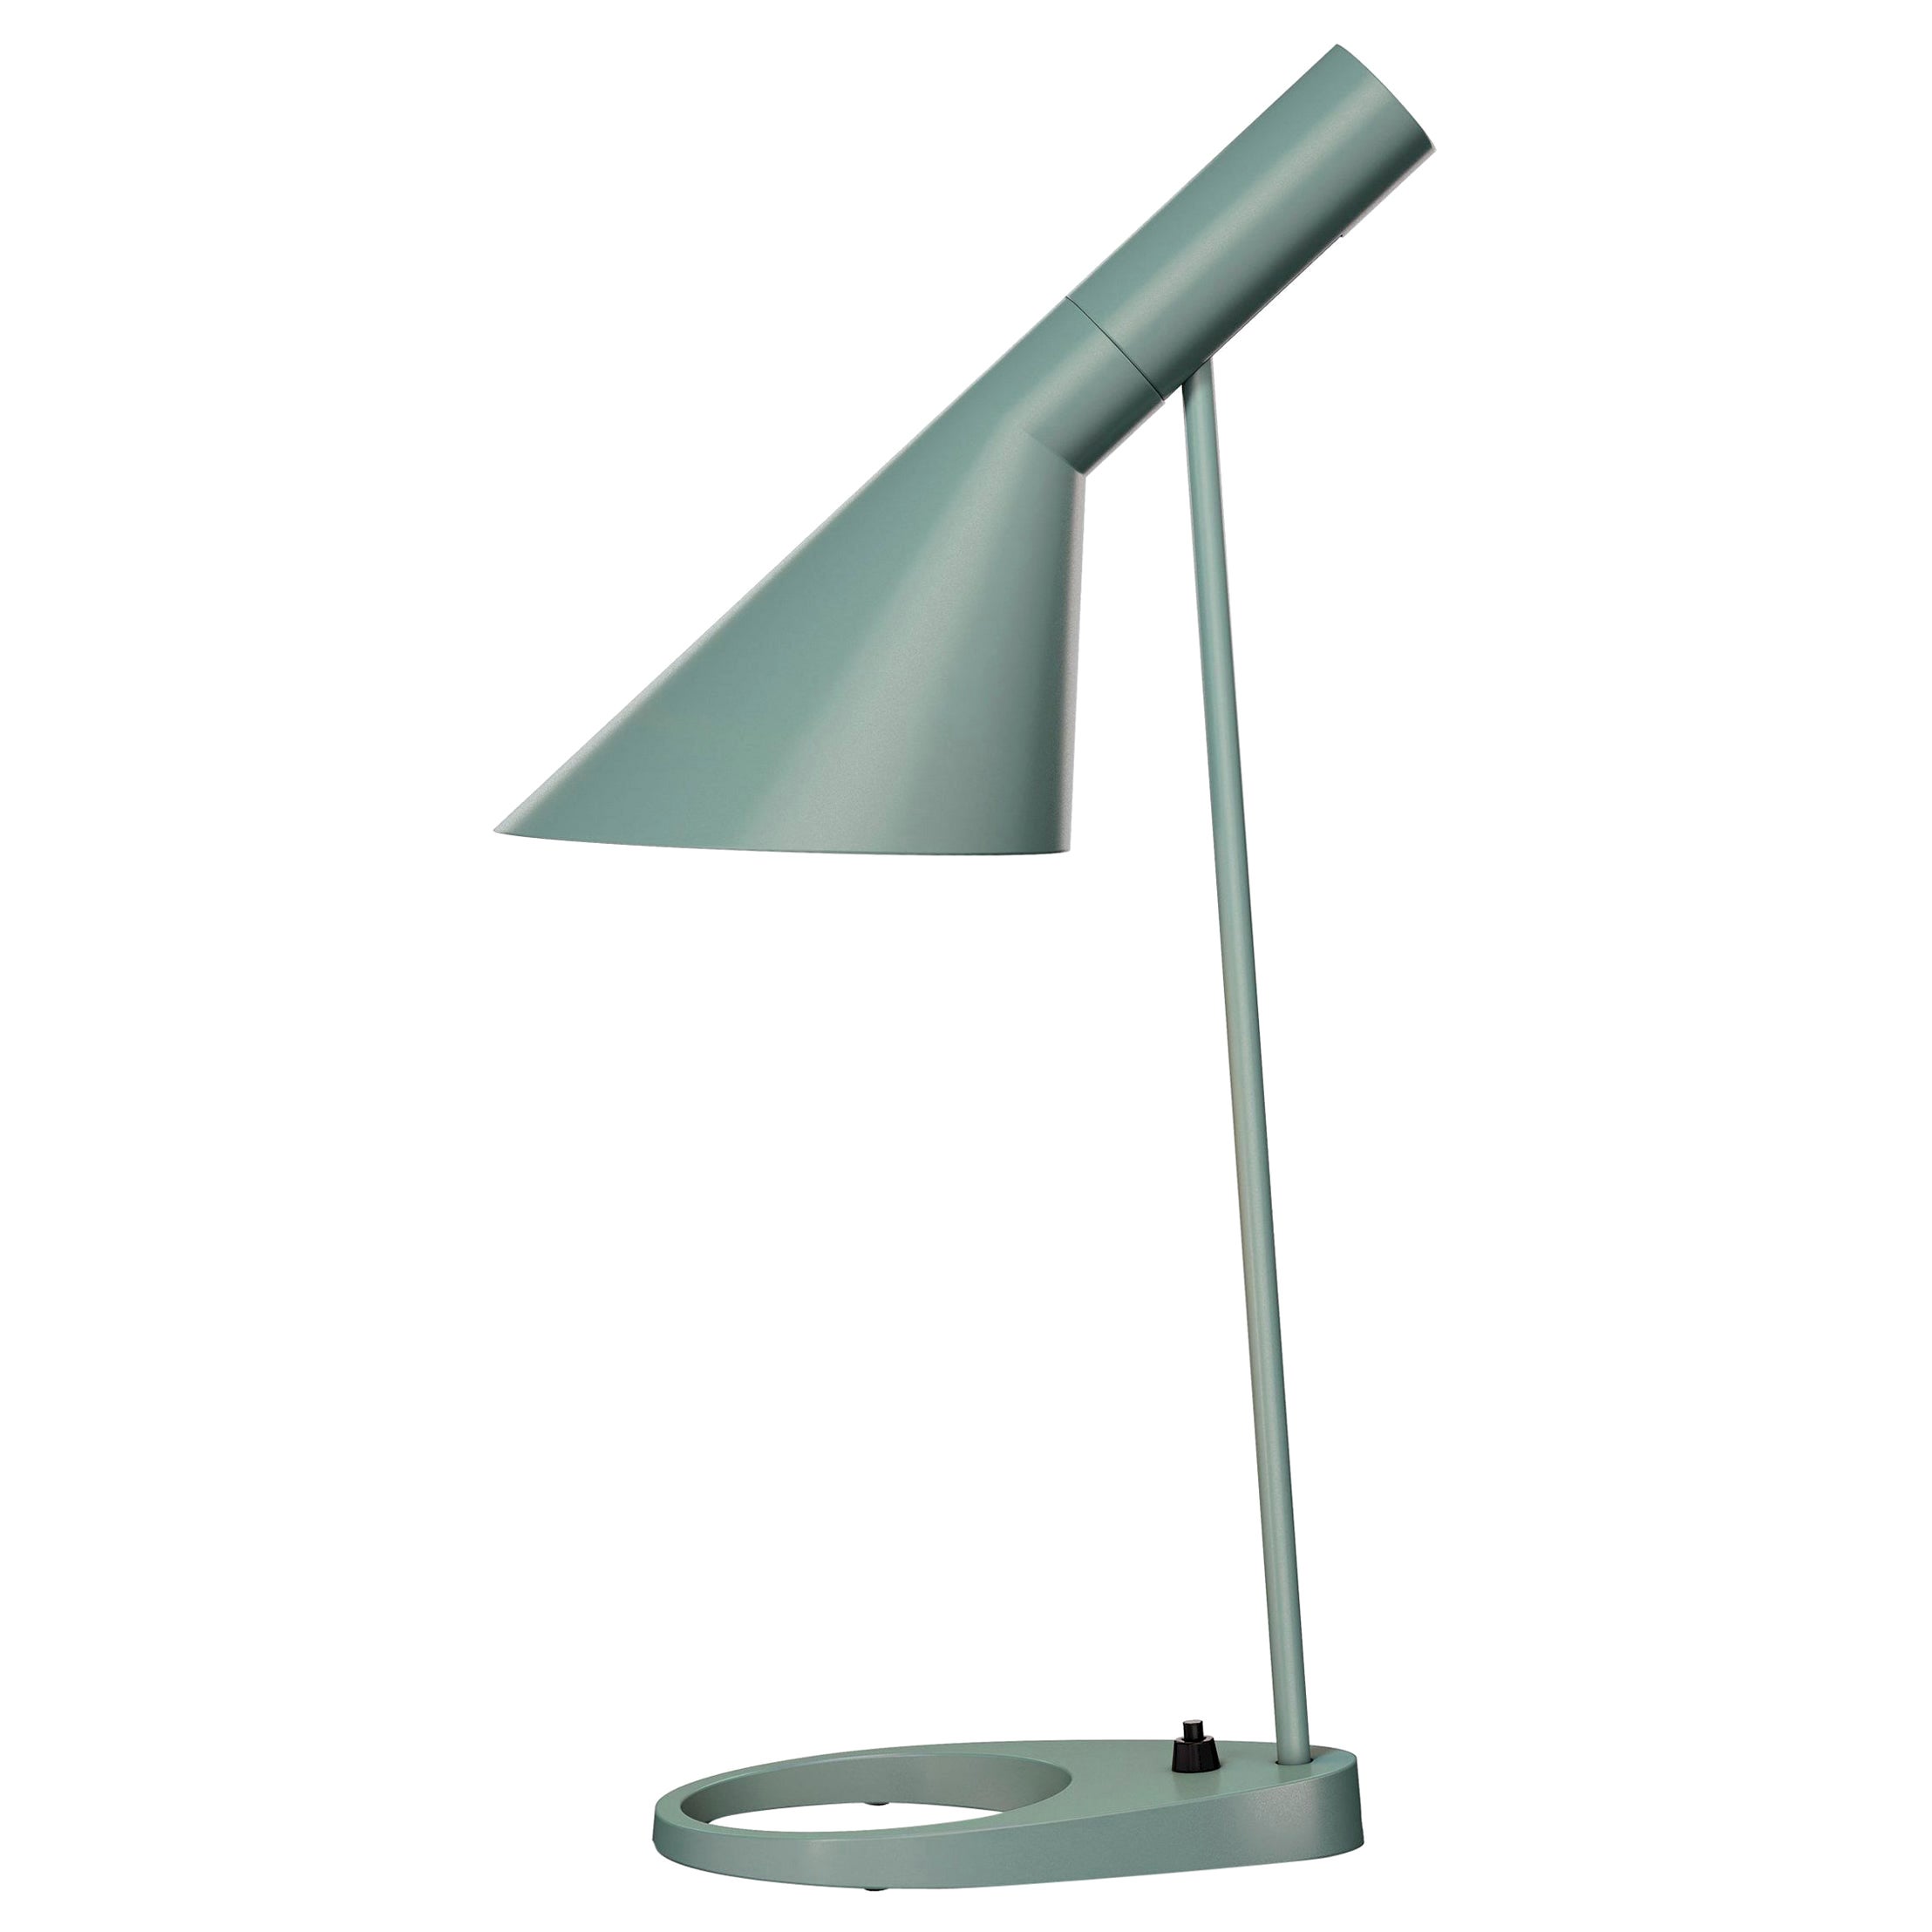 Cast Arne Jacobsen AJ Table Lamp in Dusty Blue for Louis Poulsen For Sale